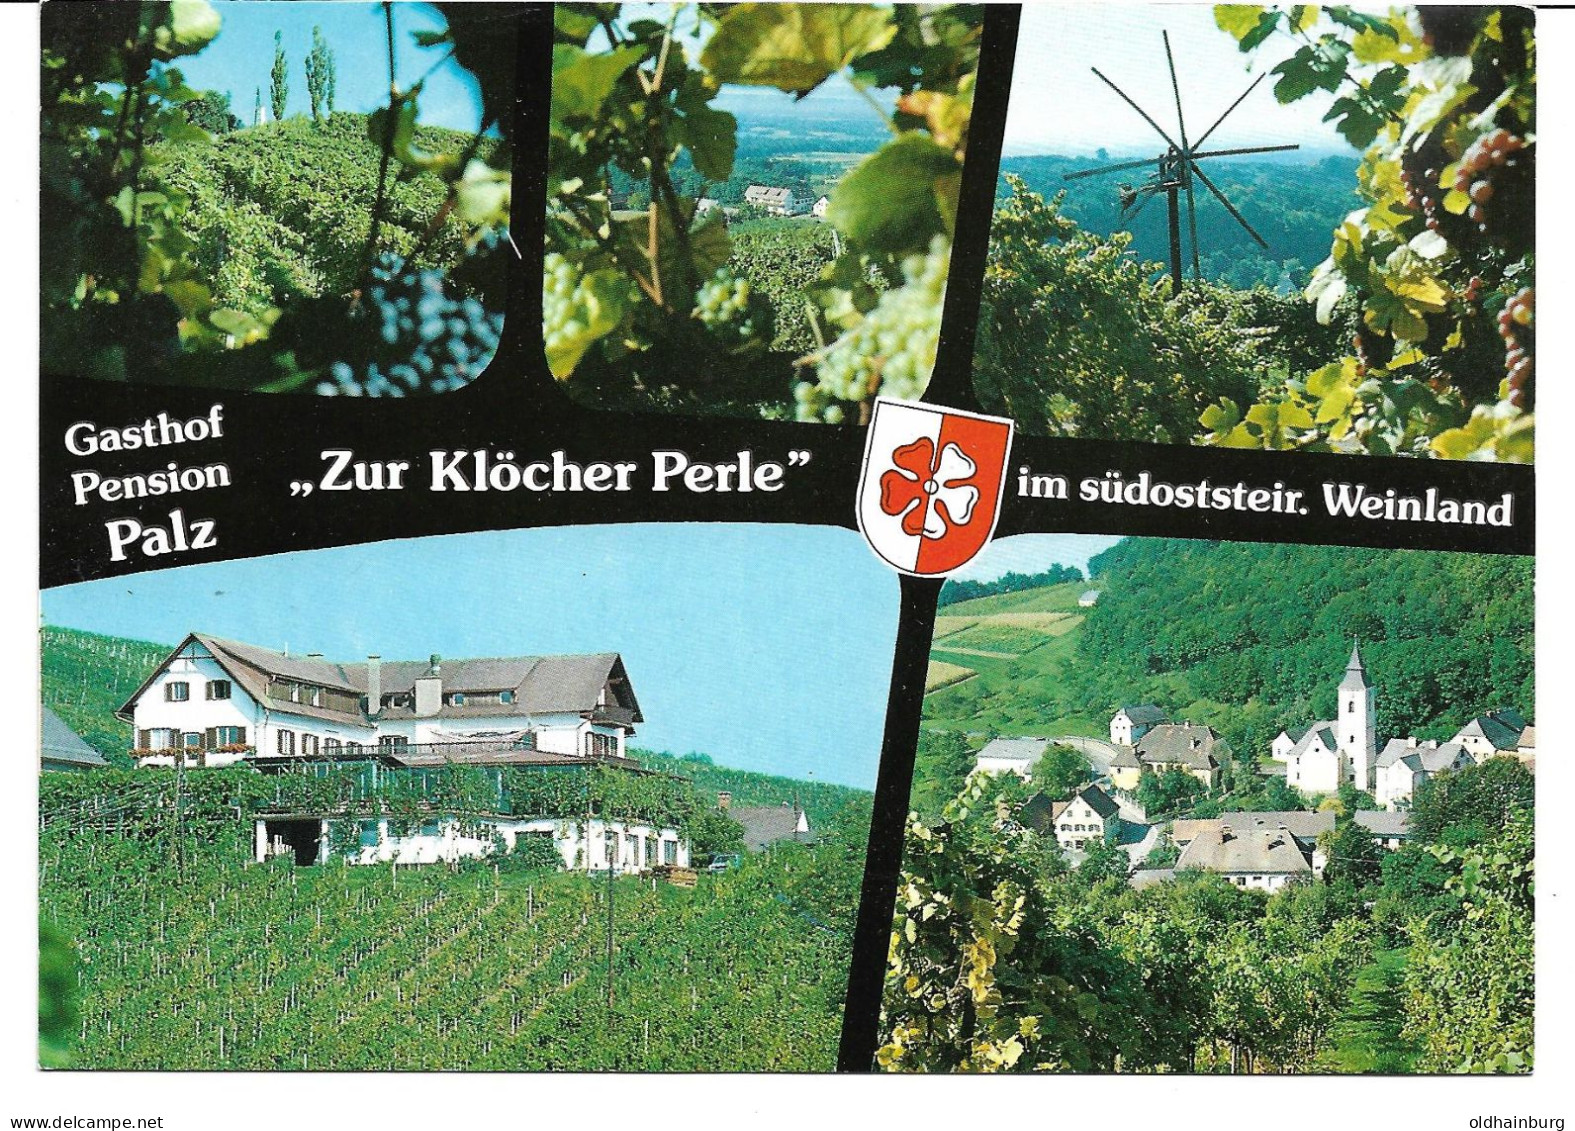 2305w: AK Ausflugsgasthof Palz "Zur Klöcherperle", 8943 Klöch, Ungelaufen (ca. 1990) - Bad Radkersburg